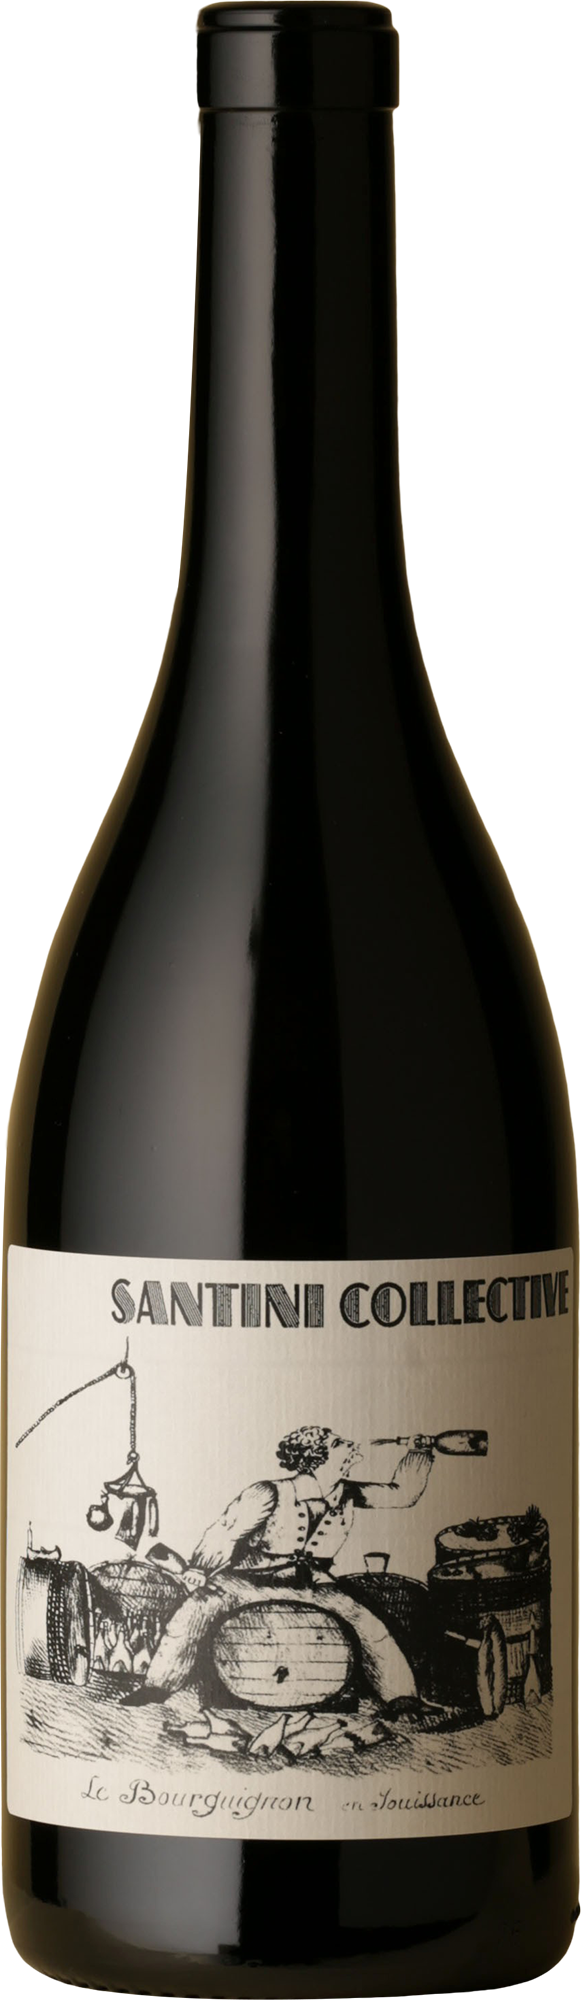 Santini Collective Bourgogne Le Bourguignon En Louissance 2018 750ml